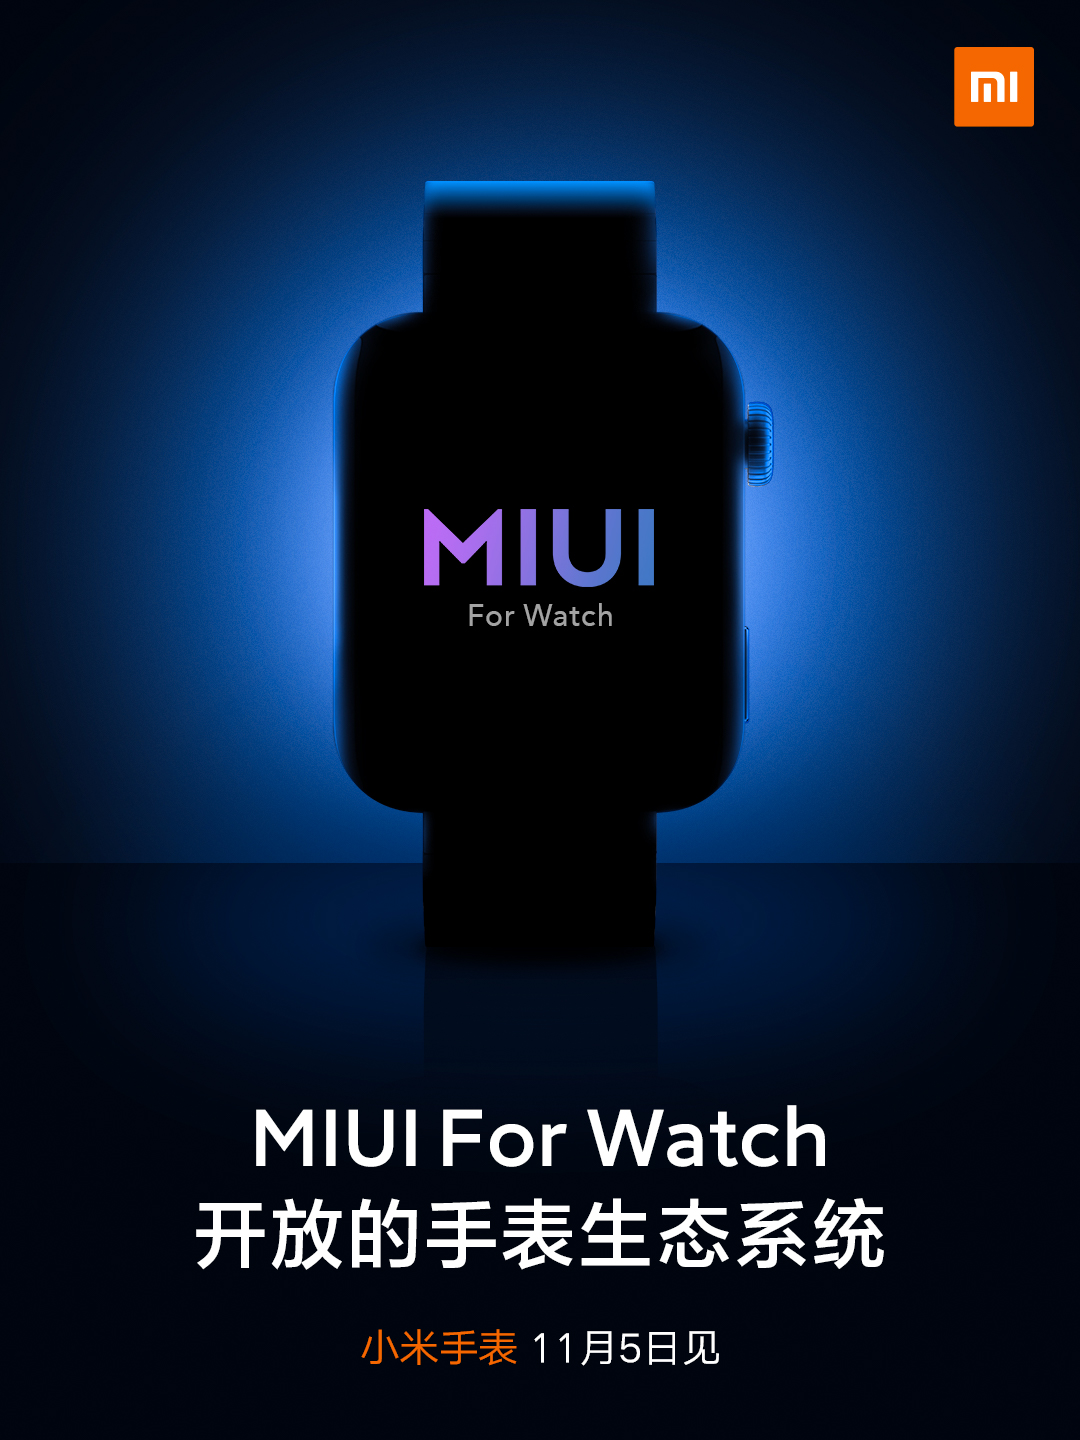 Xiaomi Mi Watch Wear OS z MIUI for Watch MIUI 11 kiedy premiera plotki przecieki wycieki